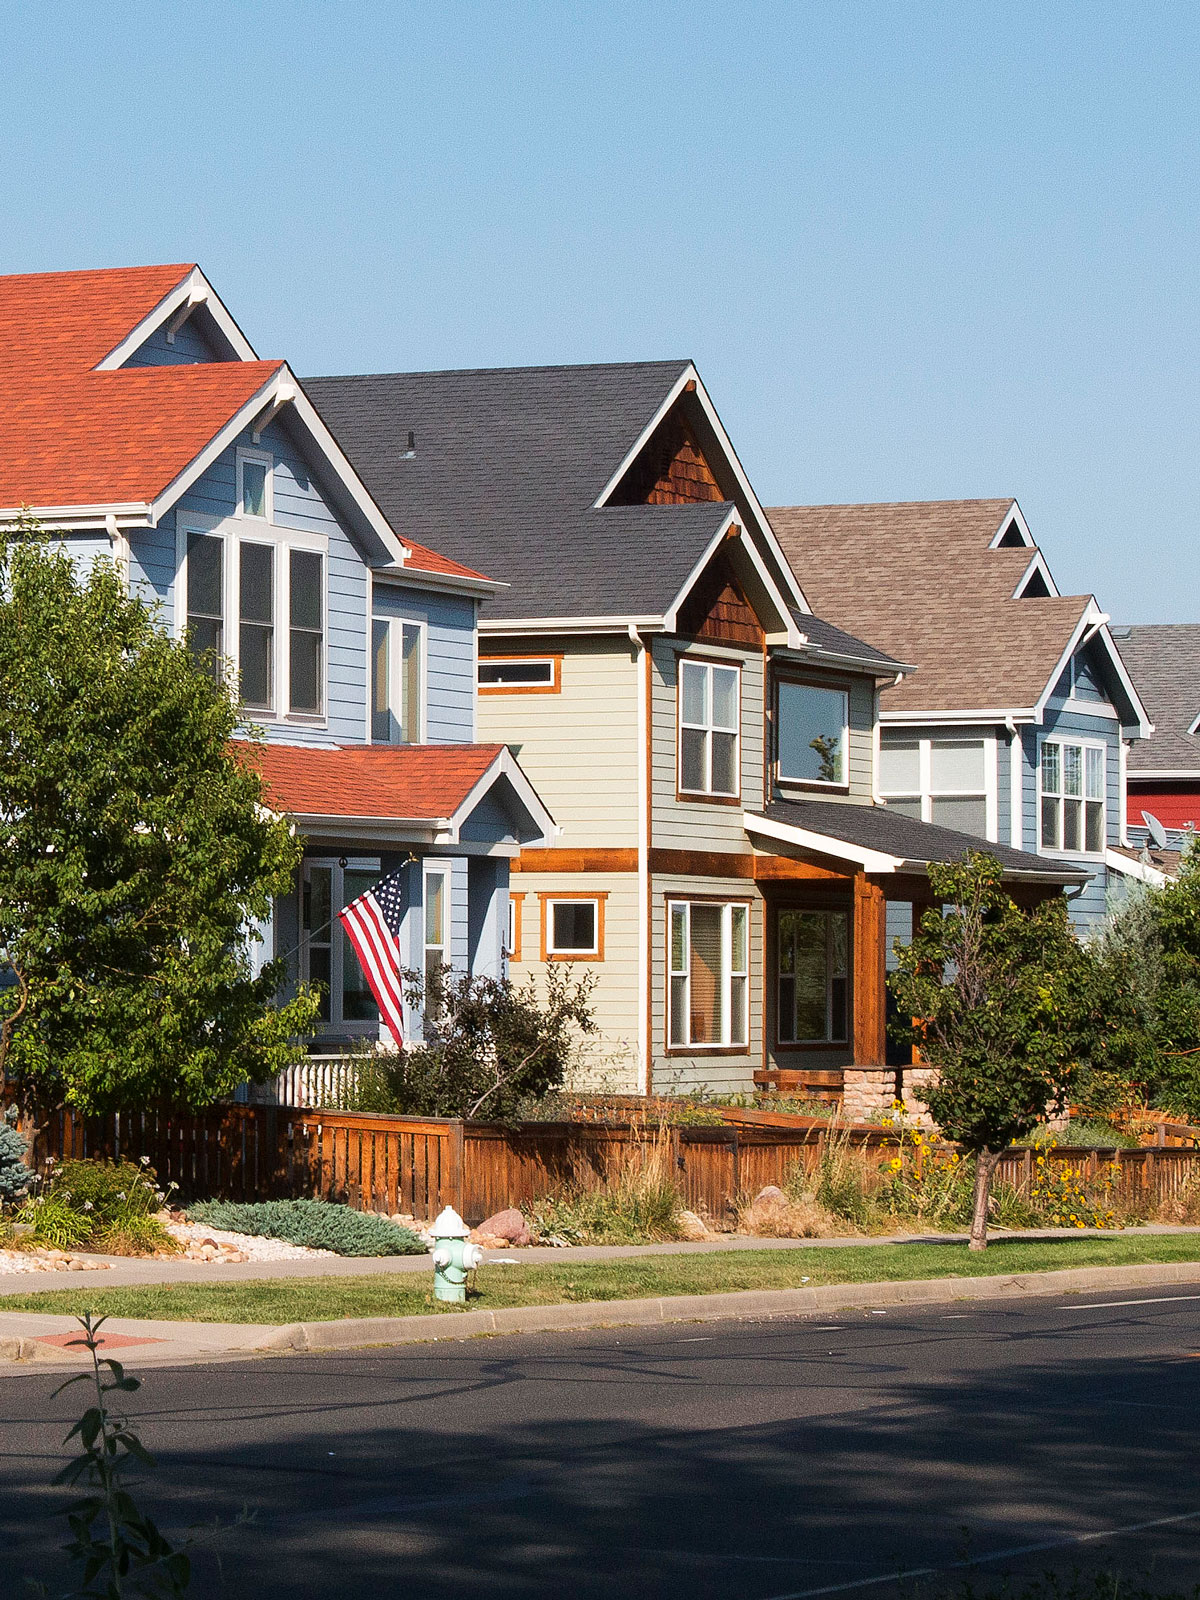 Casas suburbanas en una calle de barrio